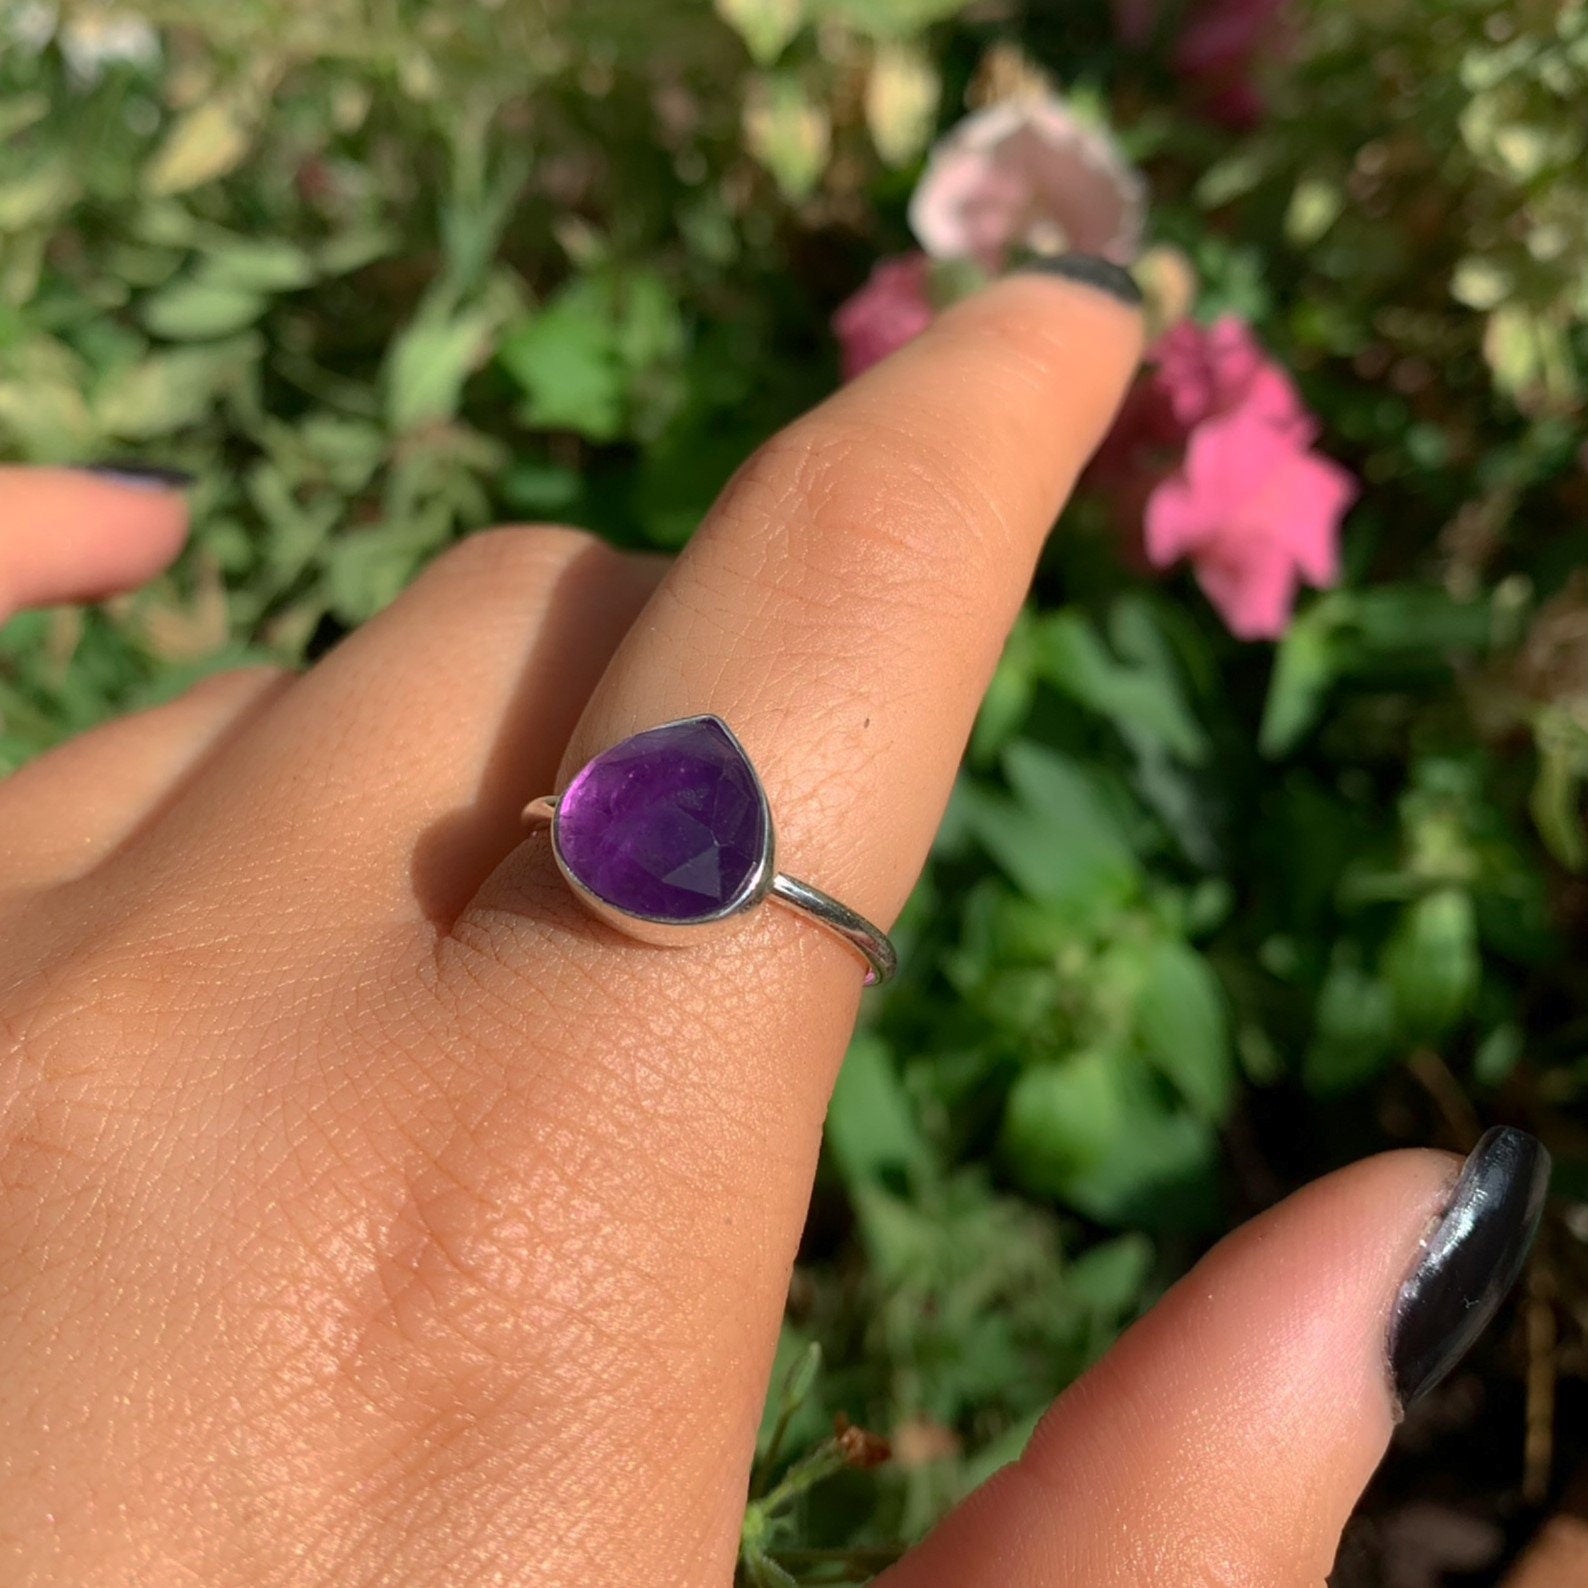 Rose Cut Amethyst Ring - Size 8 - Sterling Silver - Teardrop Amethyst Statement Ring - Purple Amethyst Jewellery. Pear Cut Amethyst Jewelry